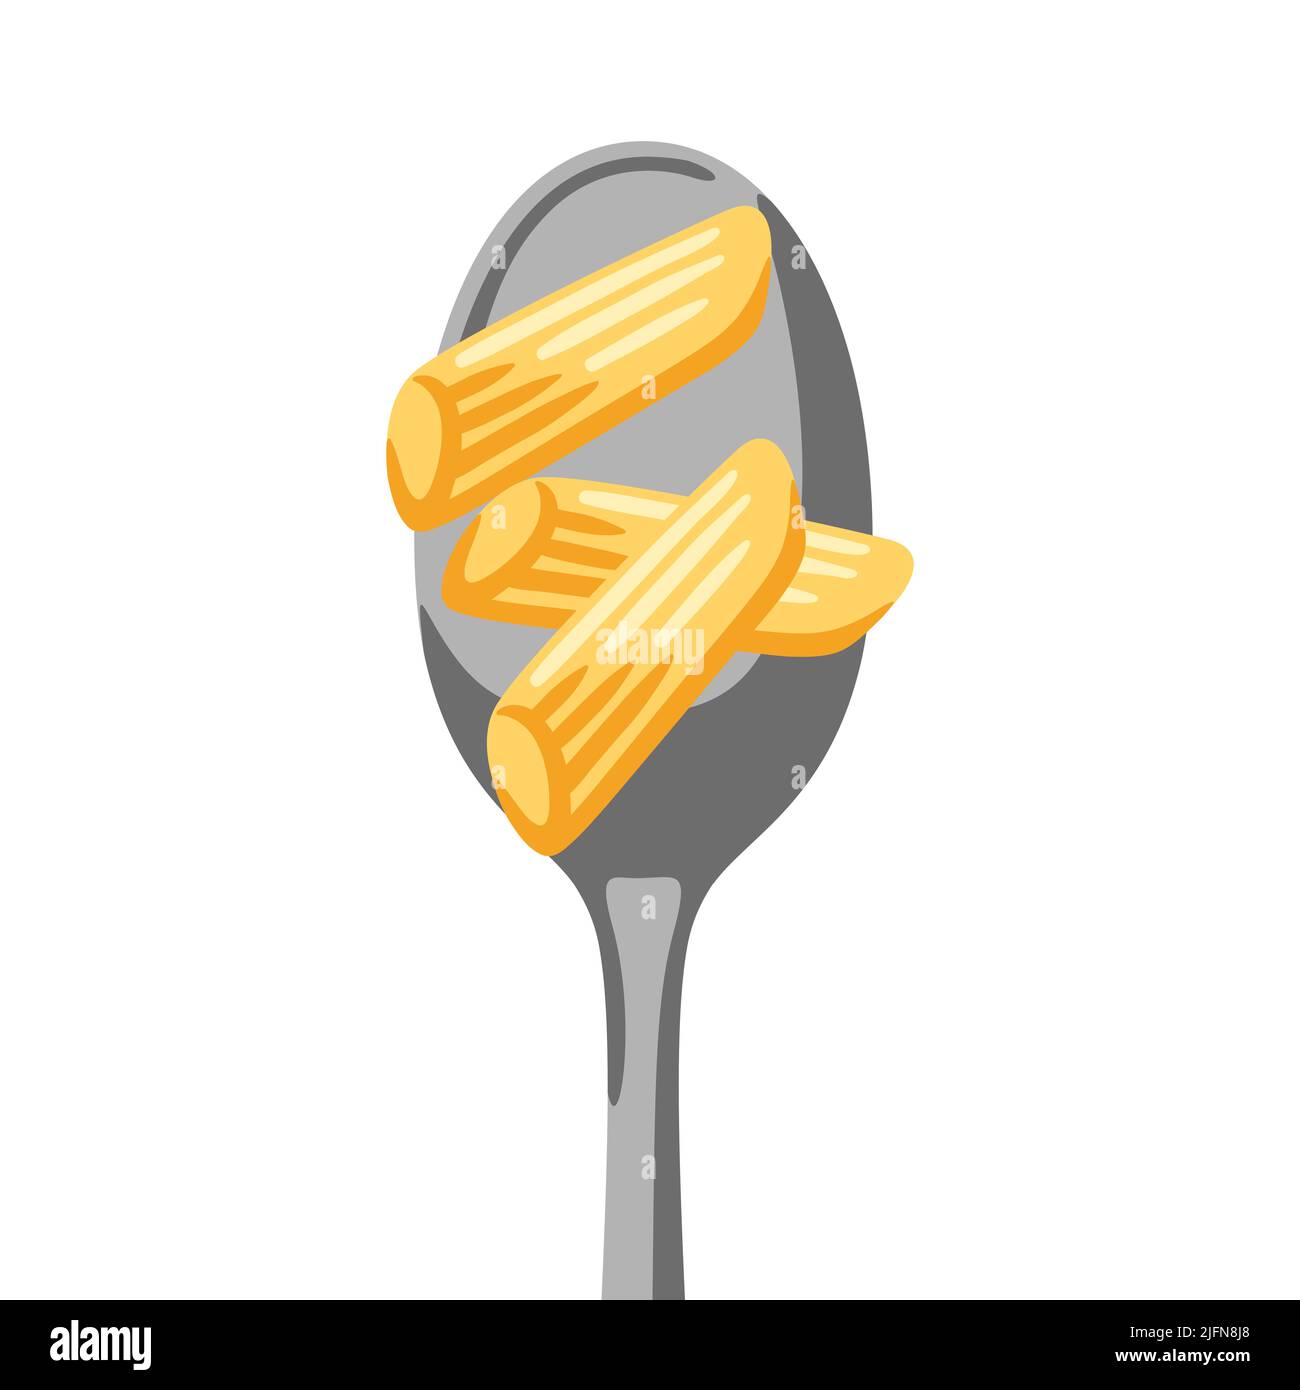 Illustrazione della pasta italiana sul cucchiaio. Immagine culinaria per il menu di caffè e ristoranti. Illustrazione Vettoriale